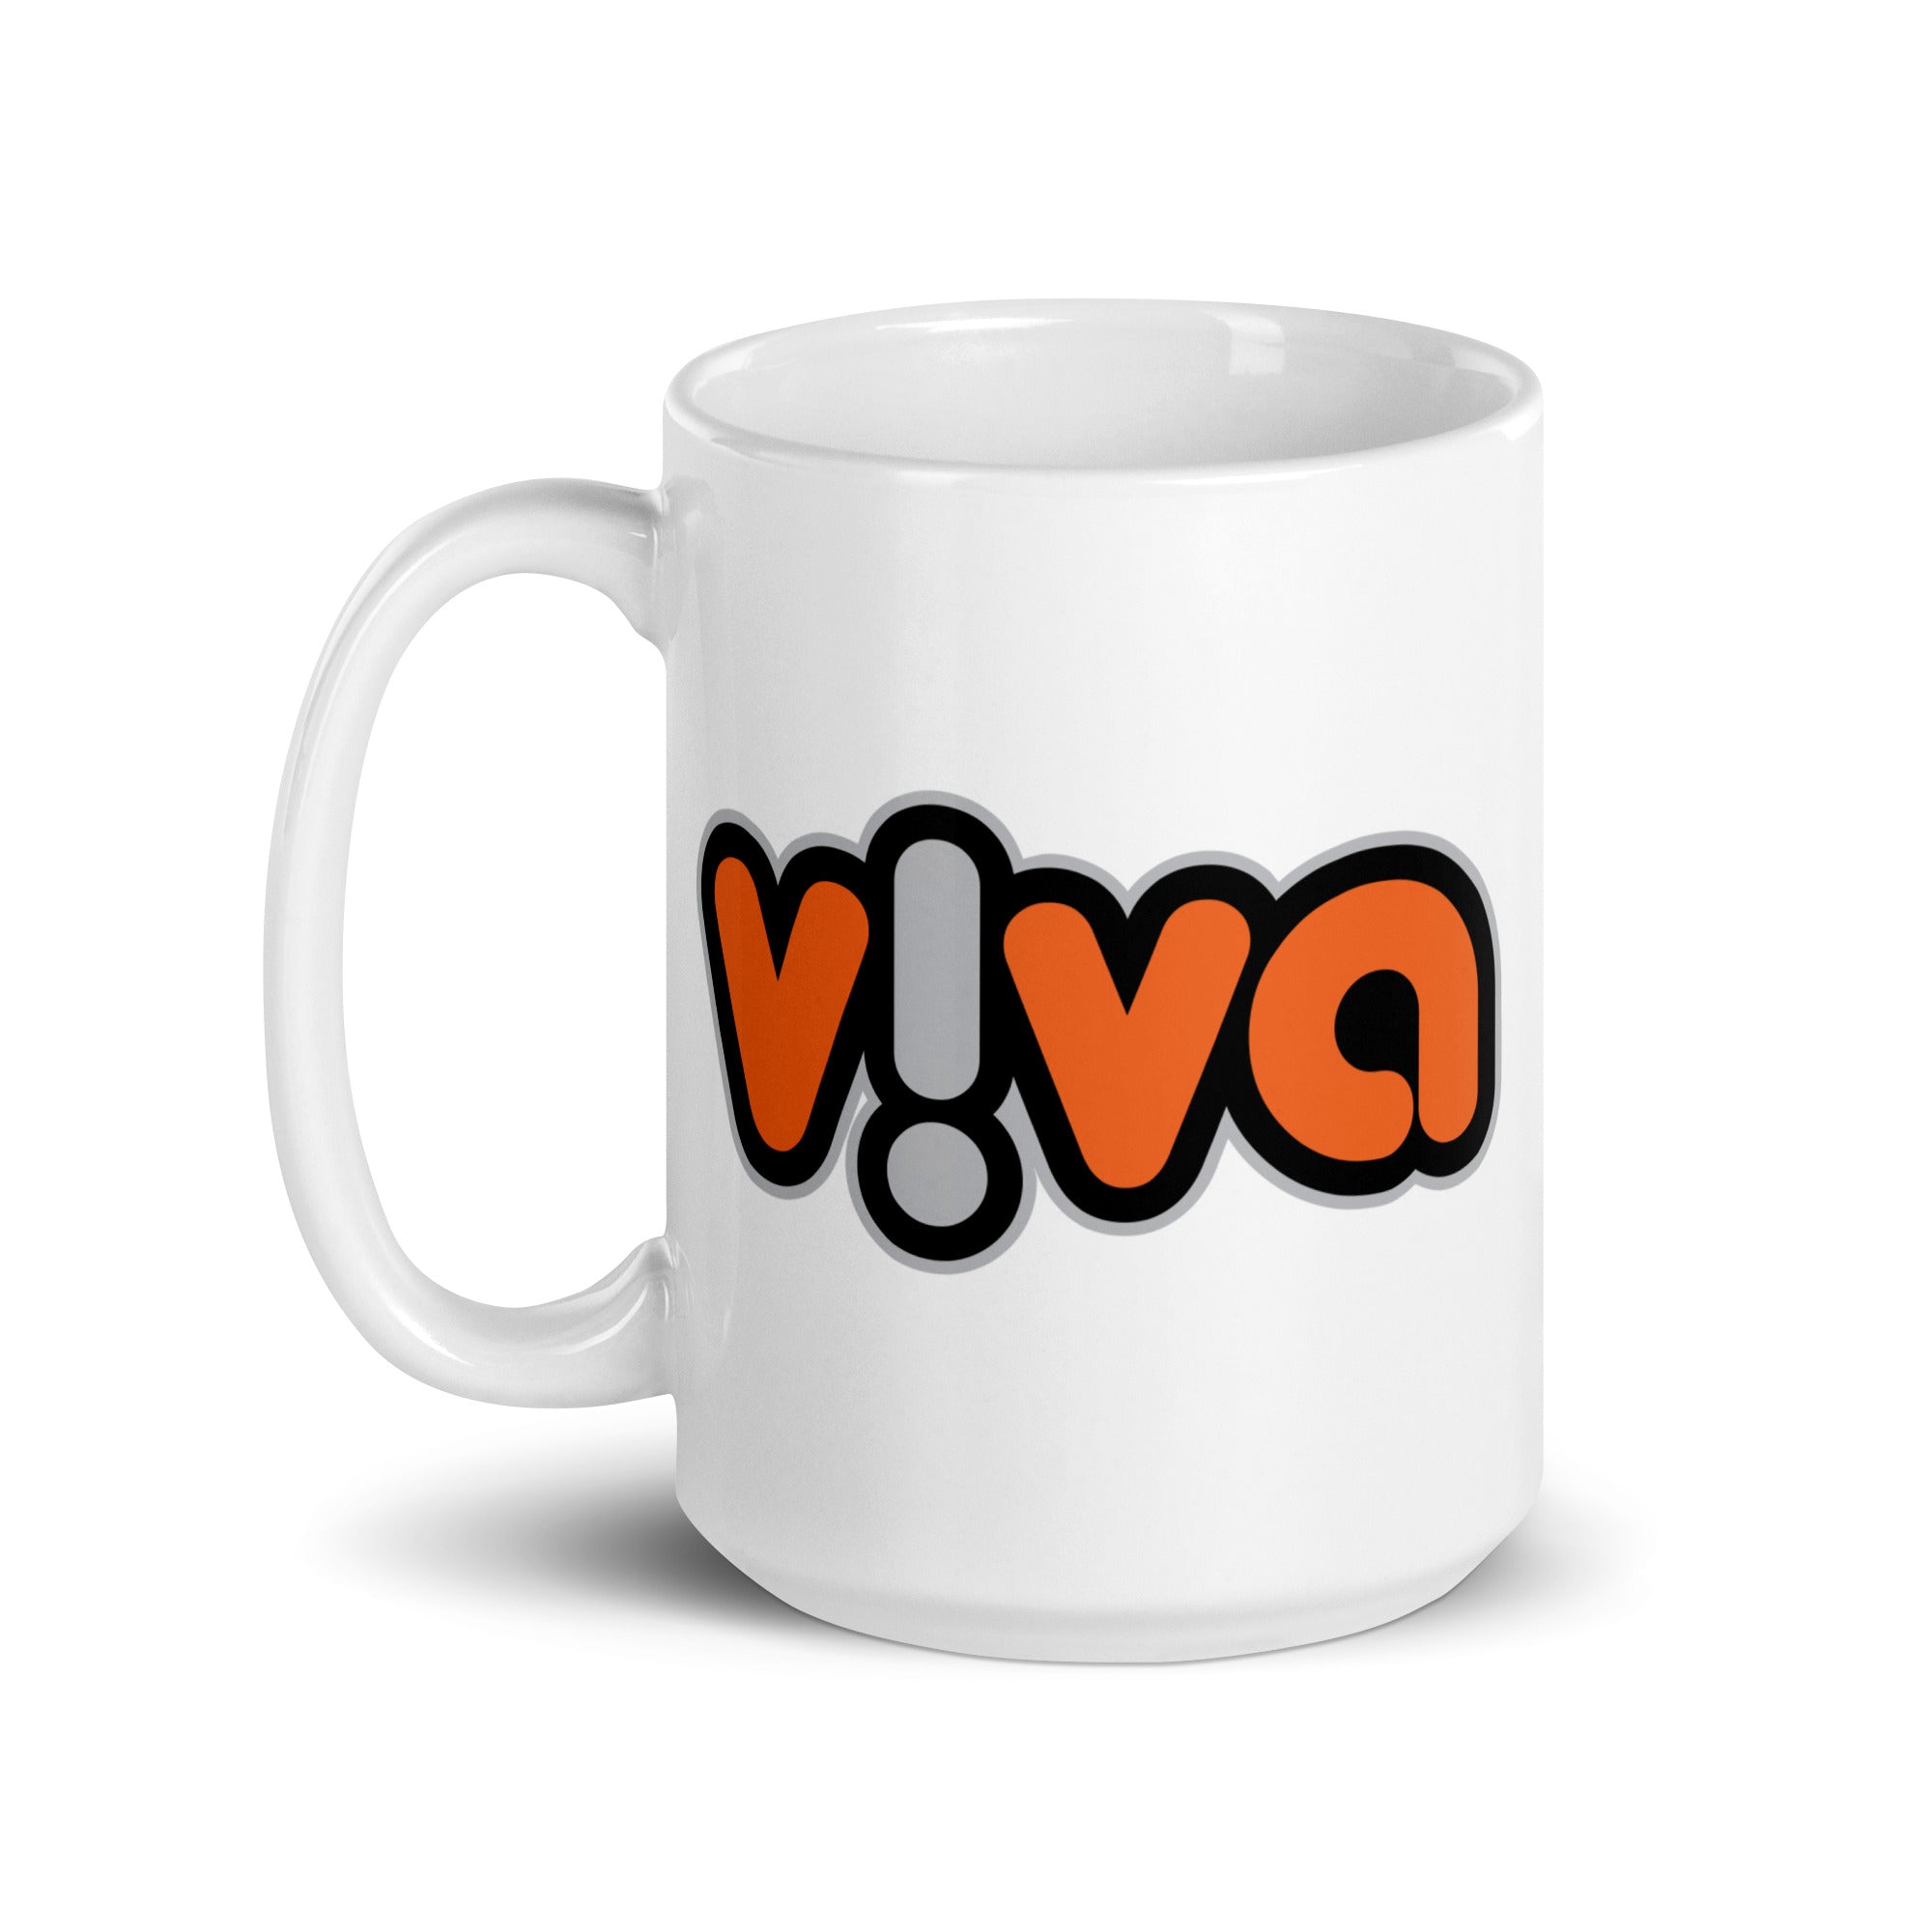 Viva: Mug